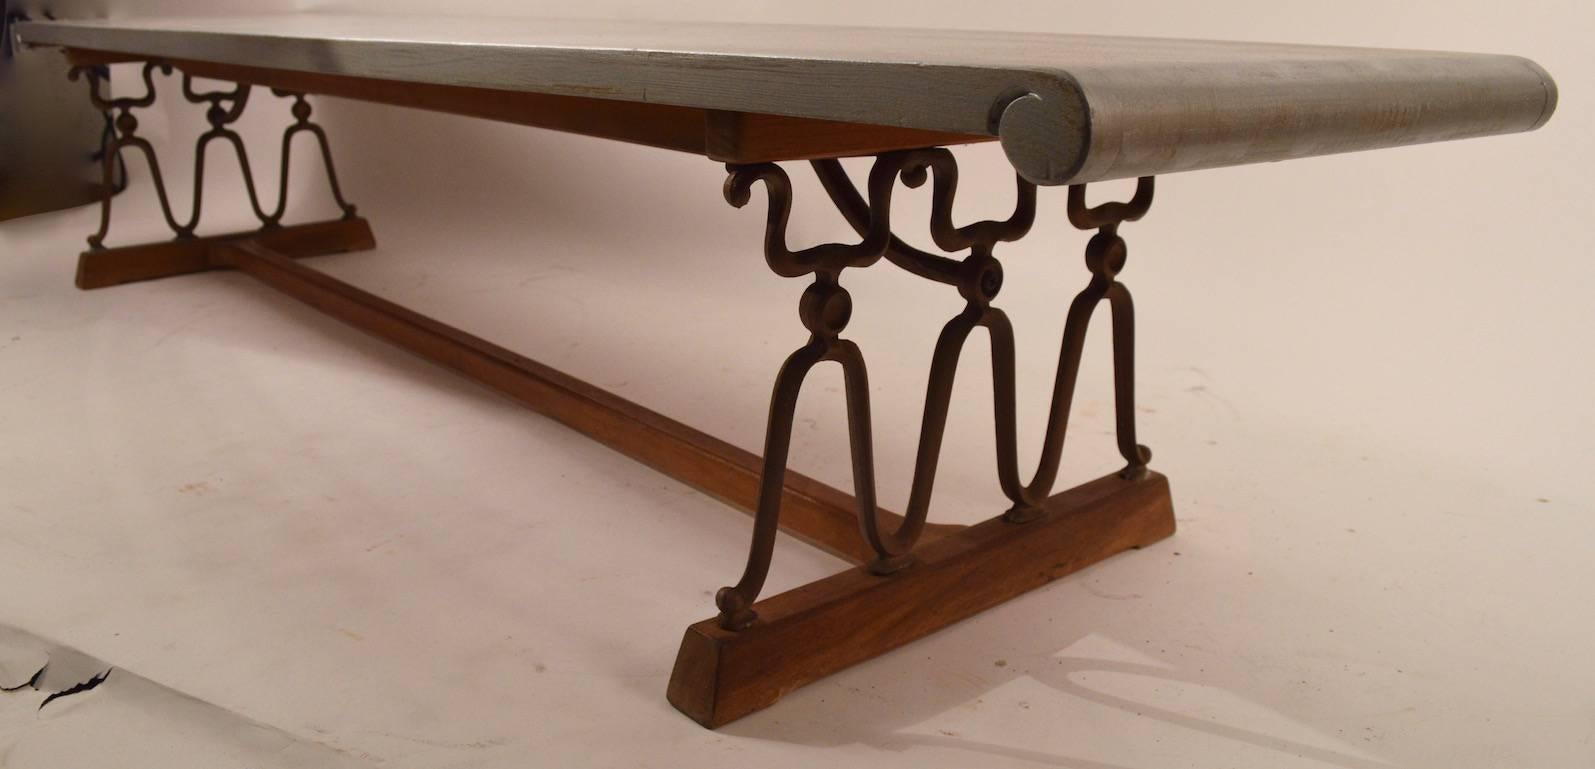 Table basse Casa Del Sol produite par Drexel et conçue par John Van Koert. Le dessus a été peint en 